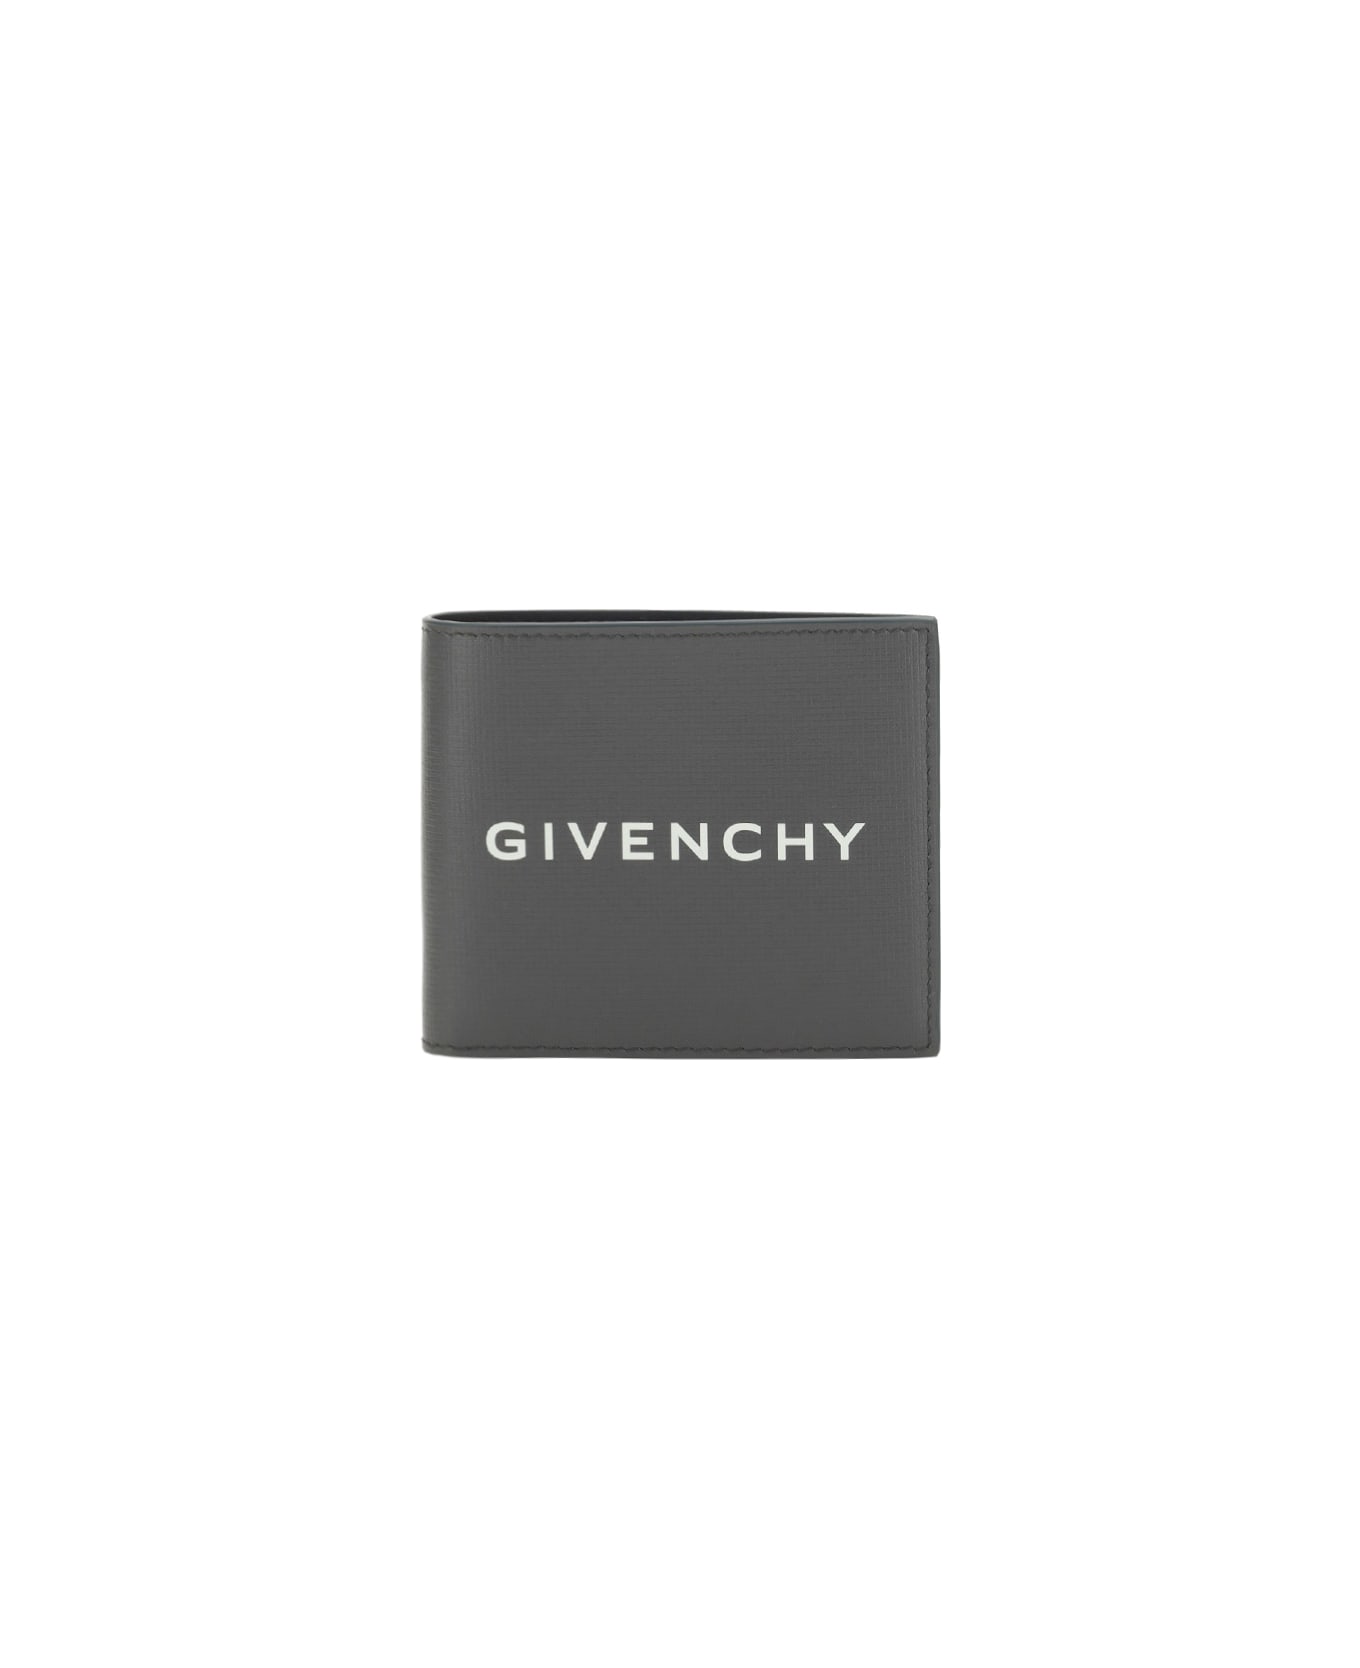 Givenchy Wallet - Quartz Grey